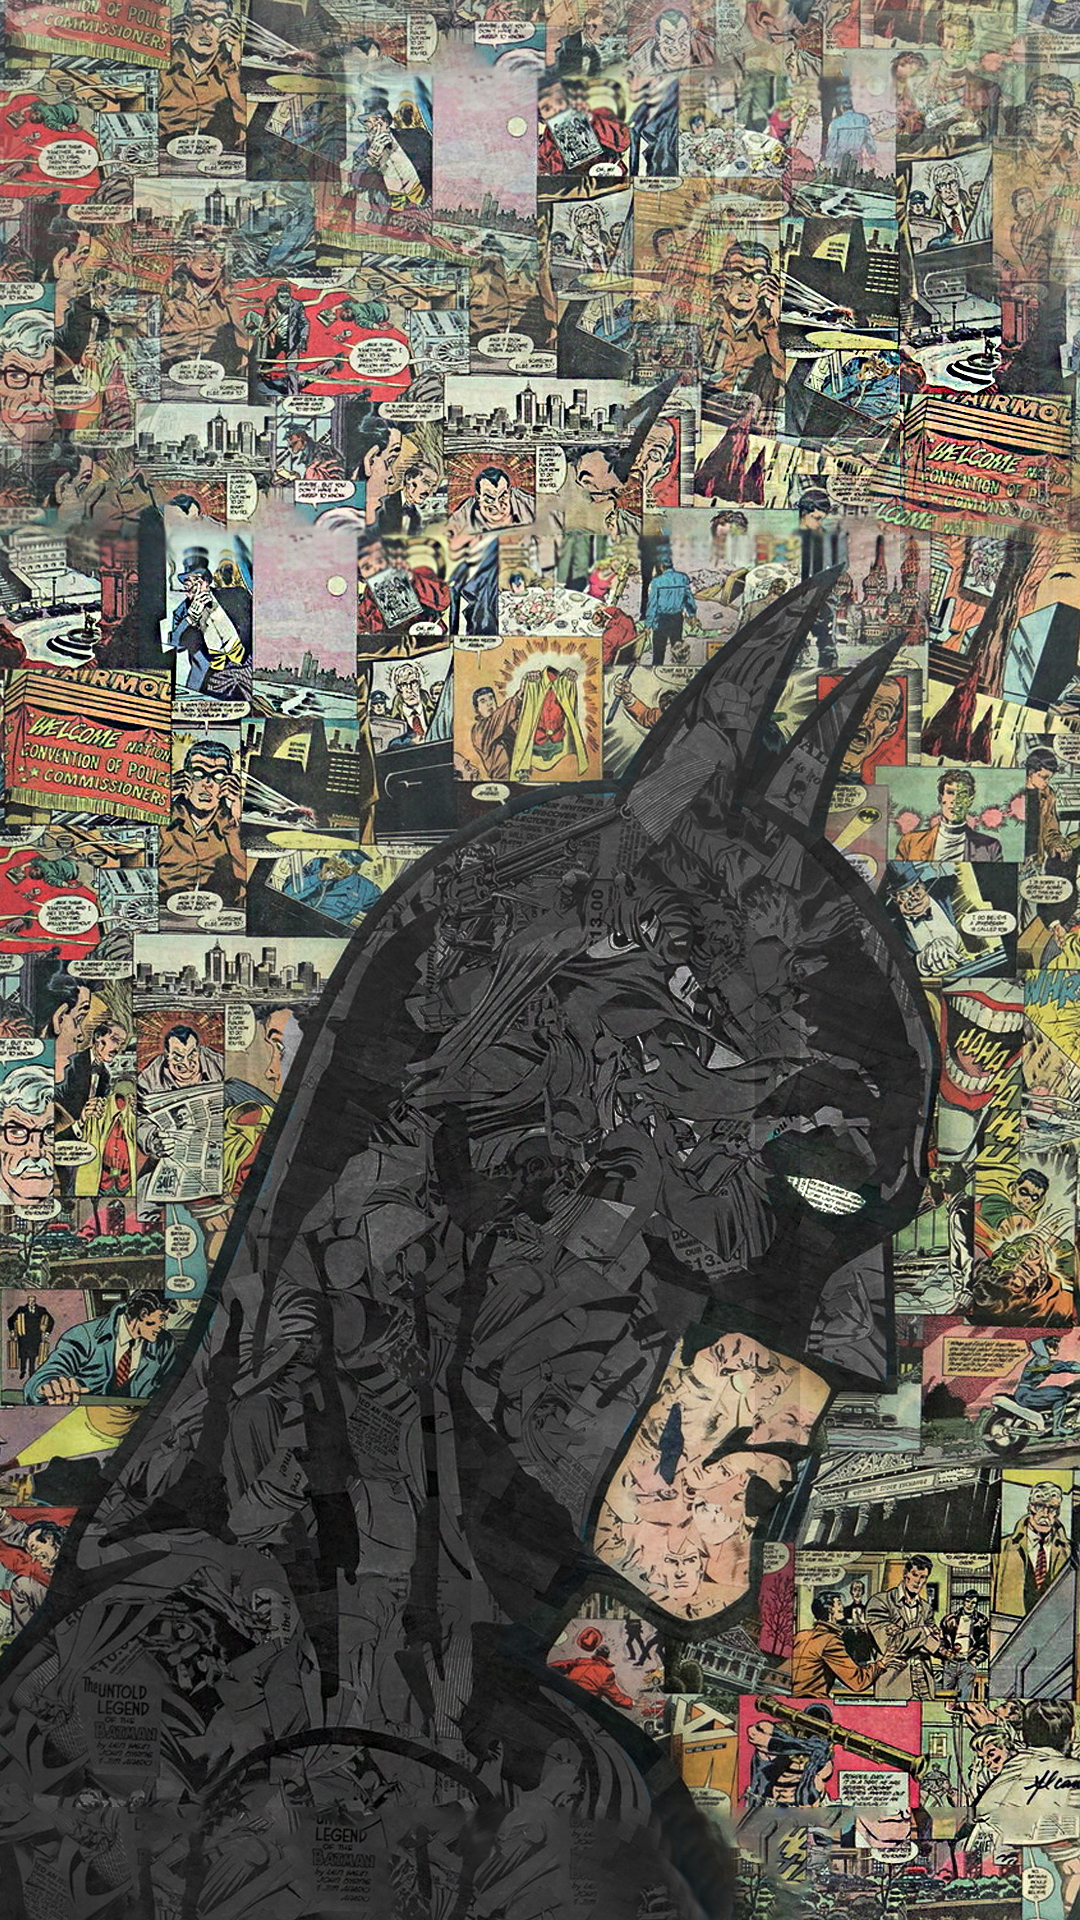 melhores wallpapers para android,batman,comics,fictional character,art,fiction